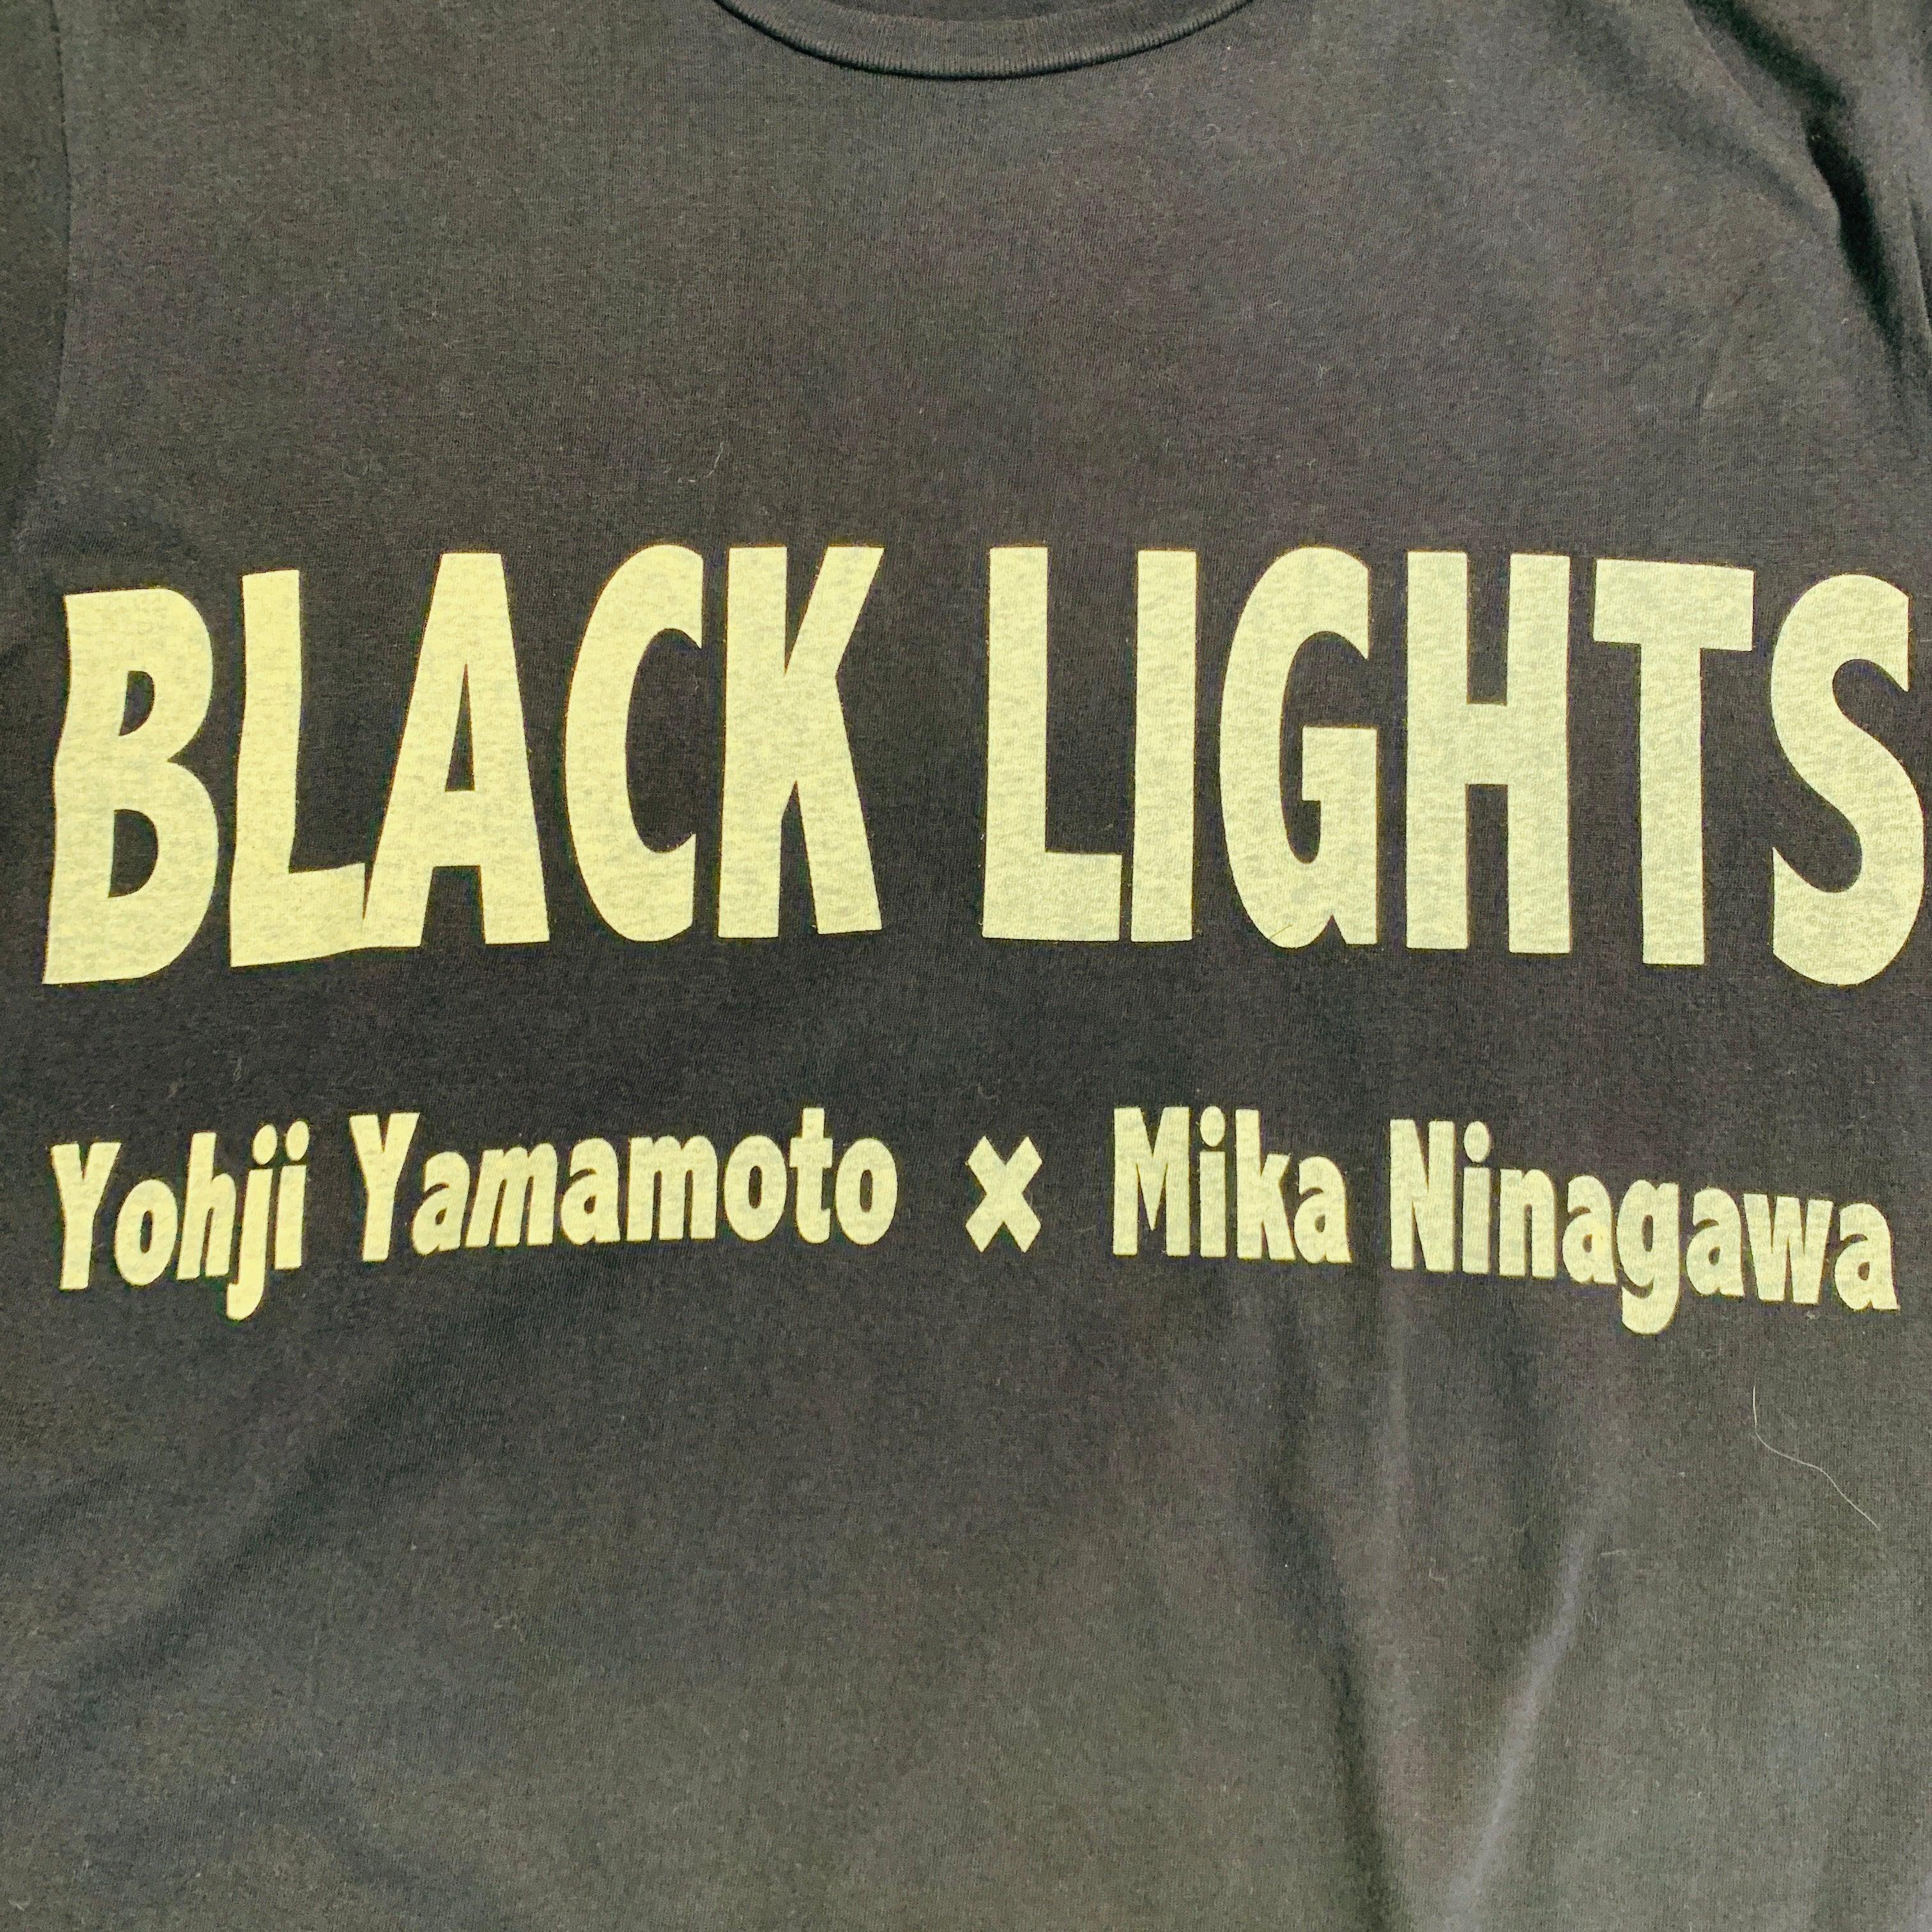 YOHJI YAMAMOTO x MIKA NINAGAWA t-shirt
in a navy cotton knit featuring white 